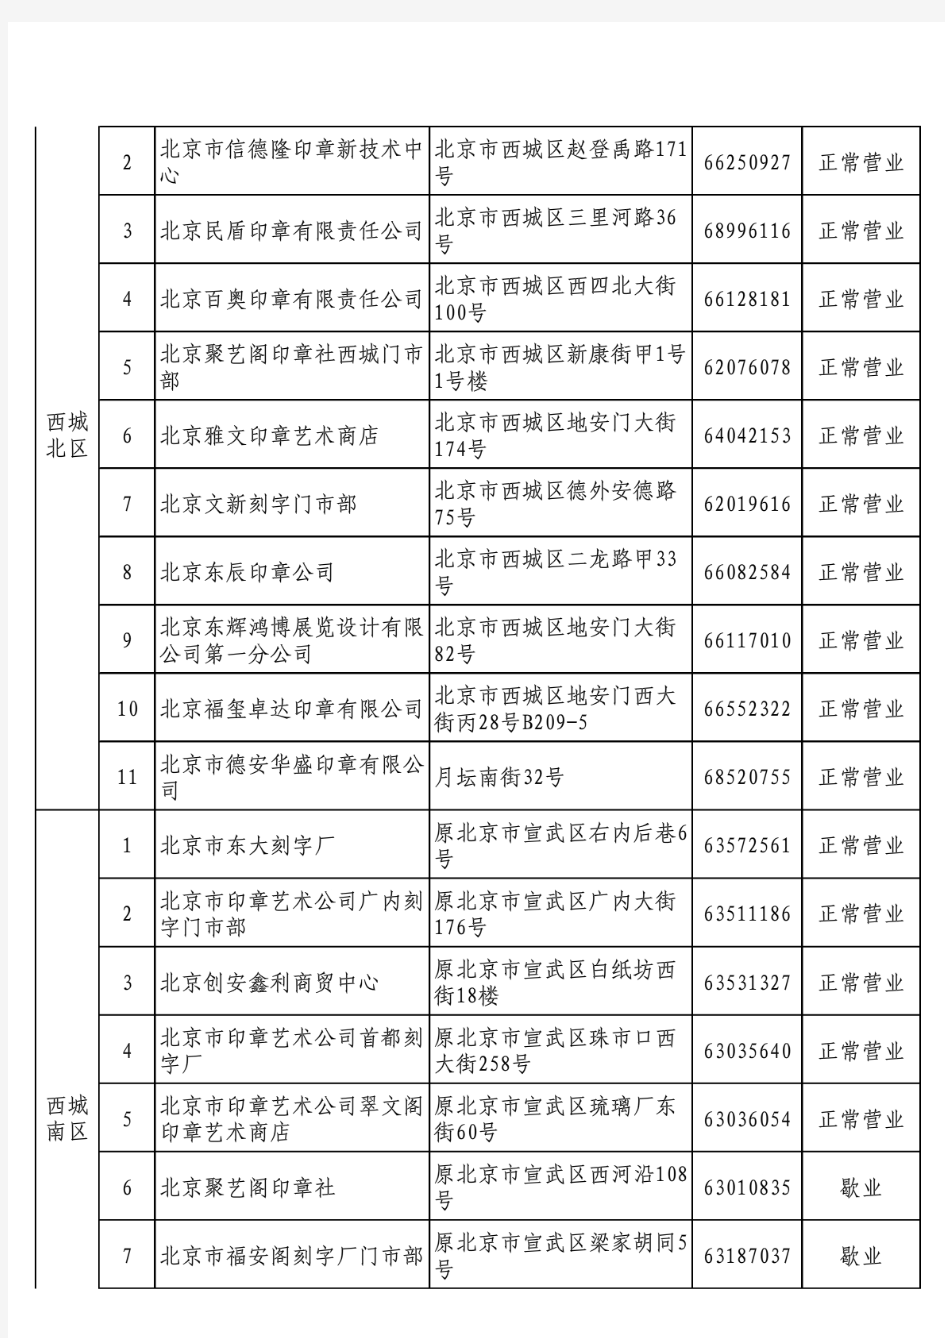 北京市公章刻制企业名录